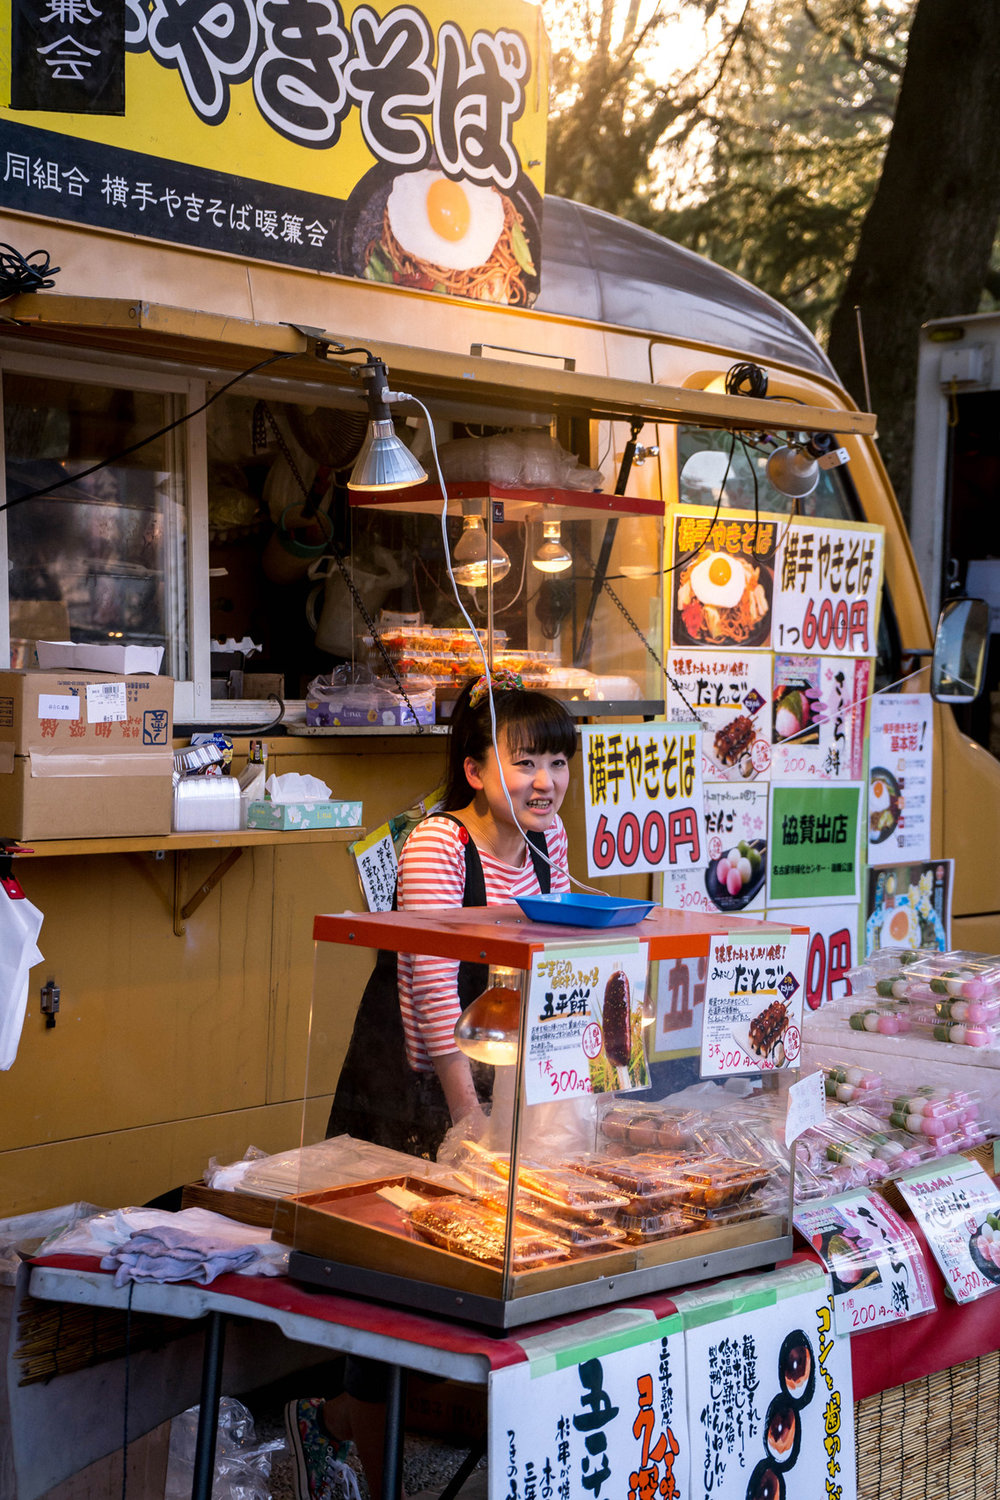 Food stalls on Hanami festival in Tsurumai park